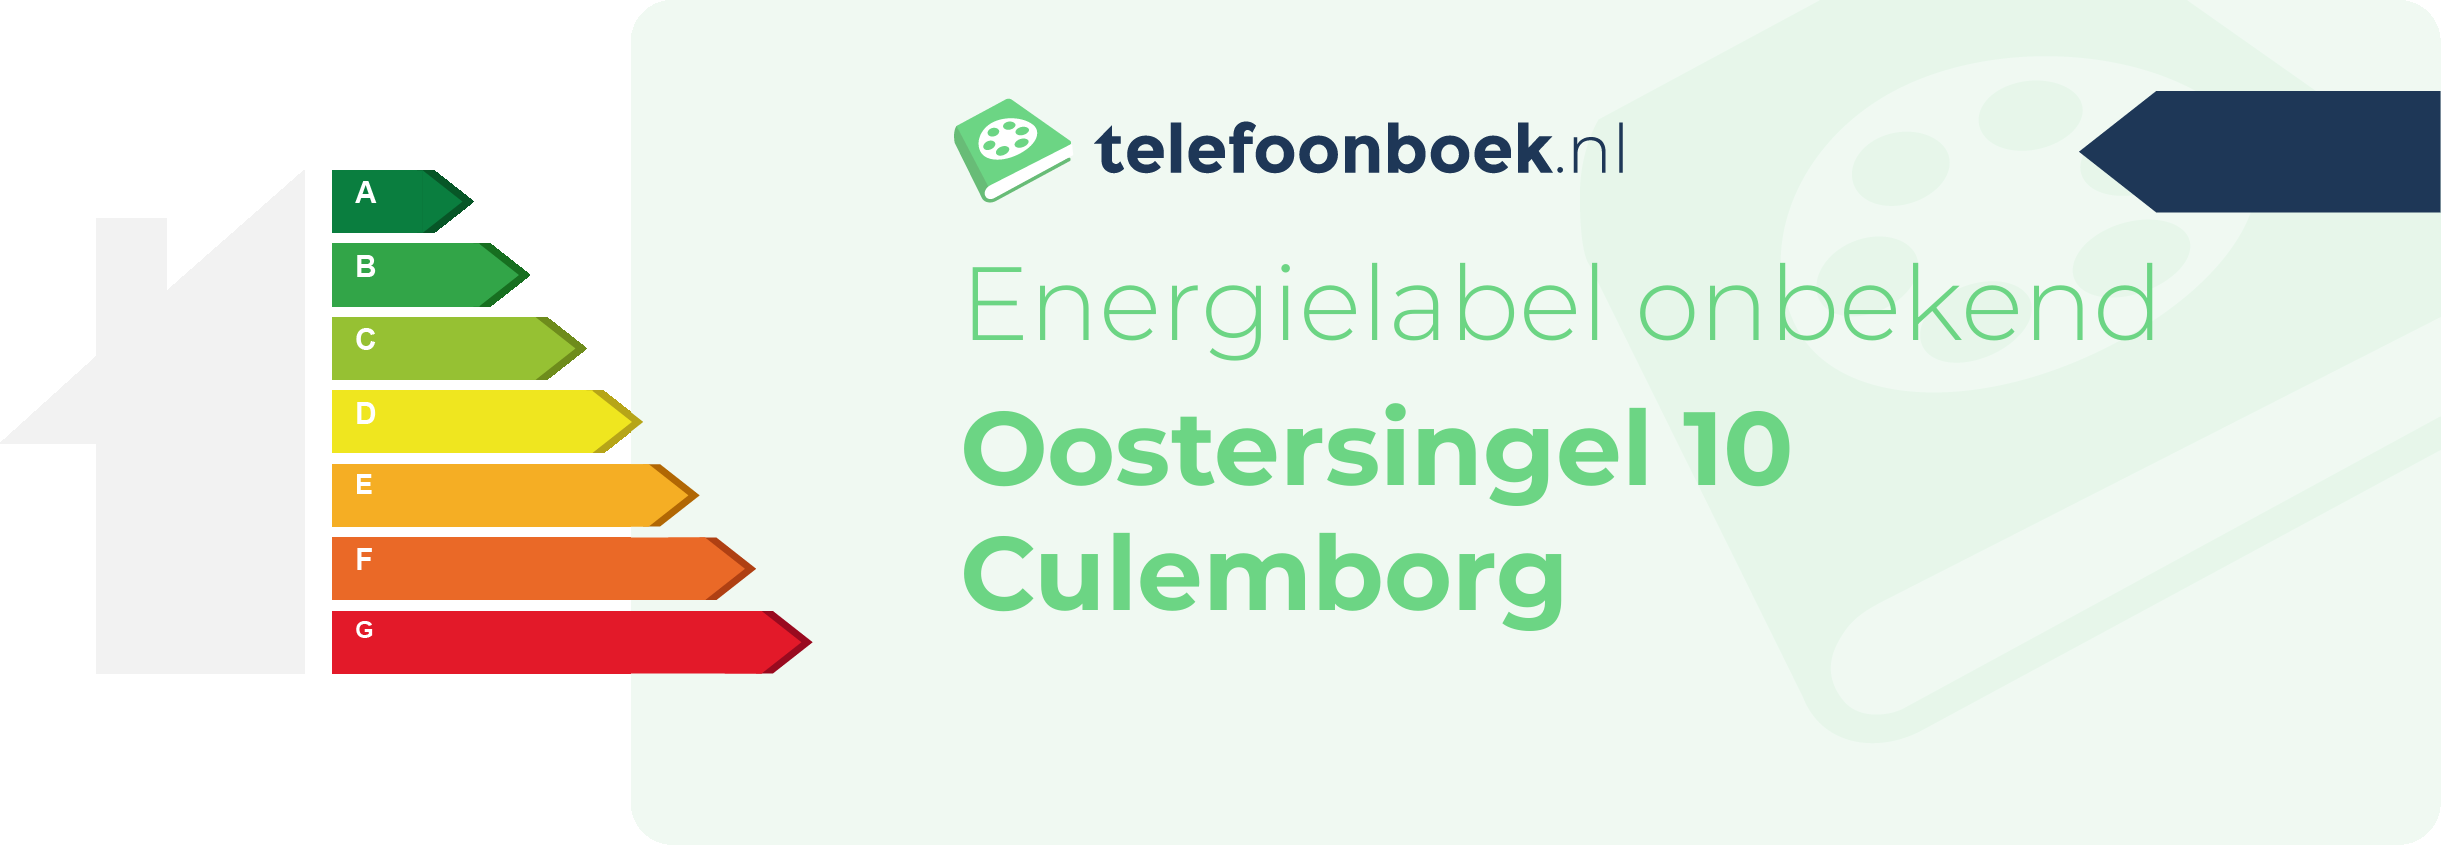 Energielabel Oostersingel 10 Culemborg